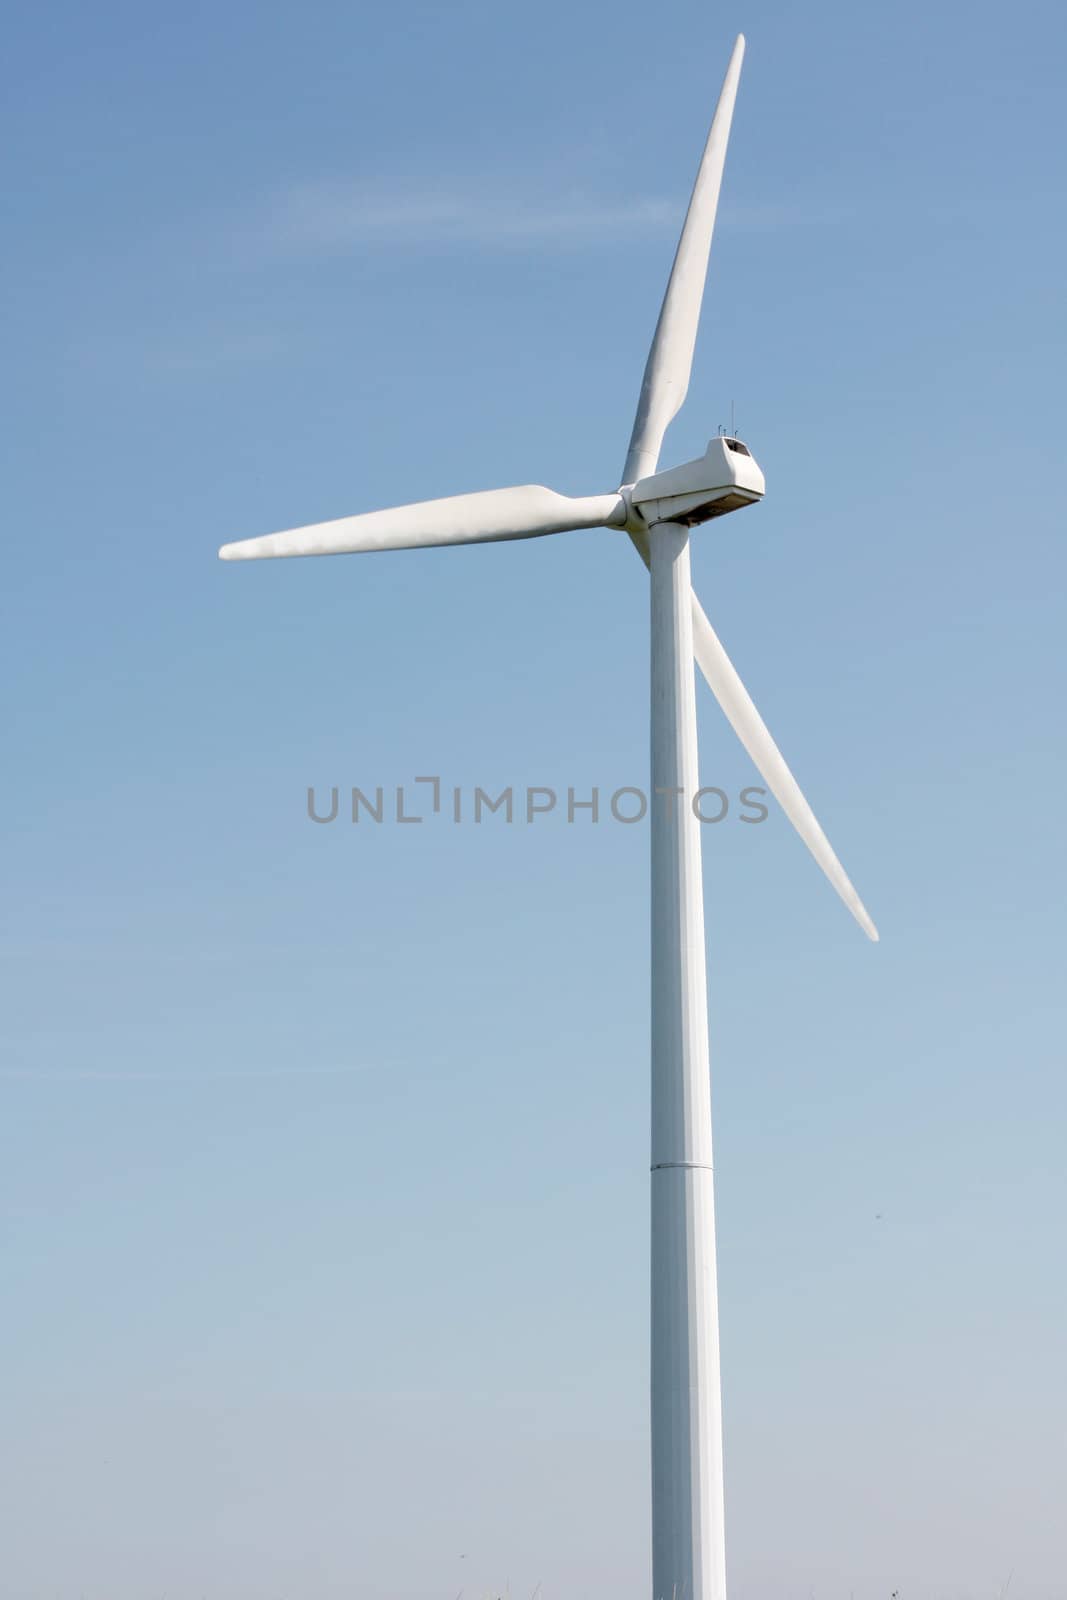 Wind turbine by leeser